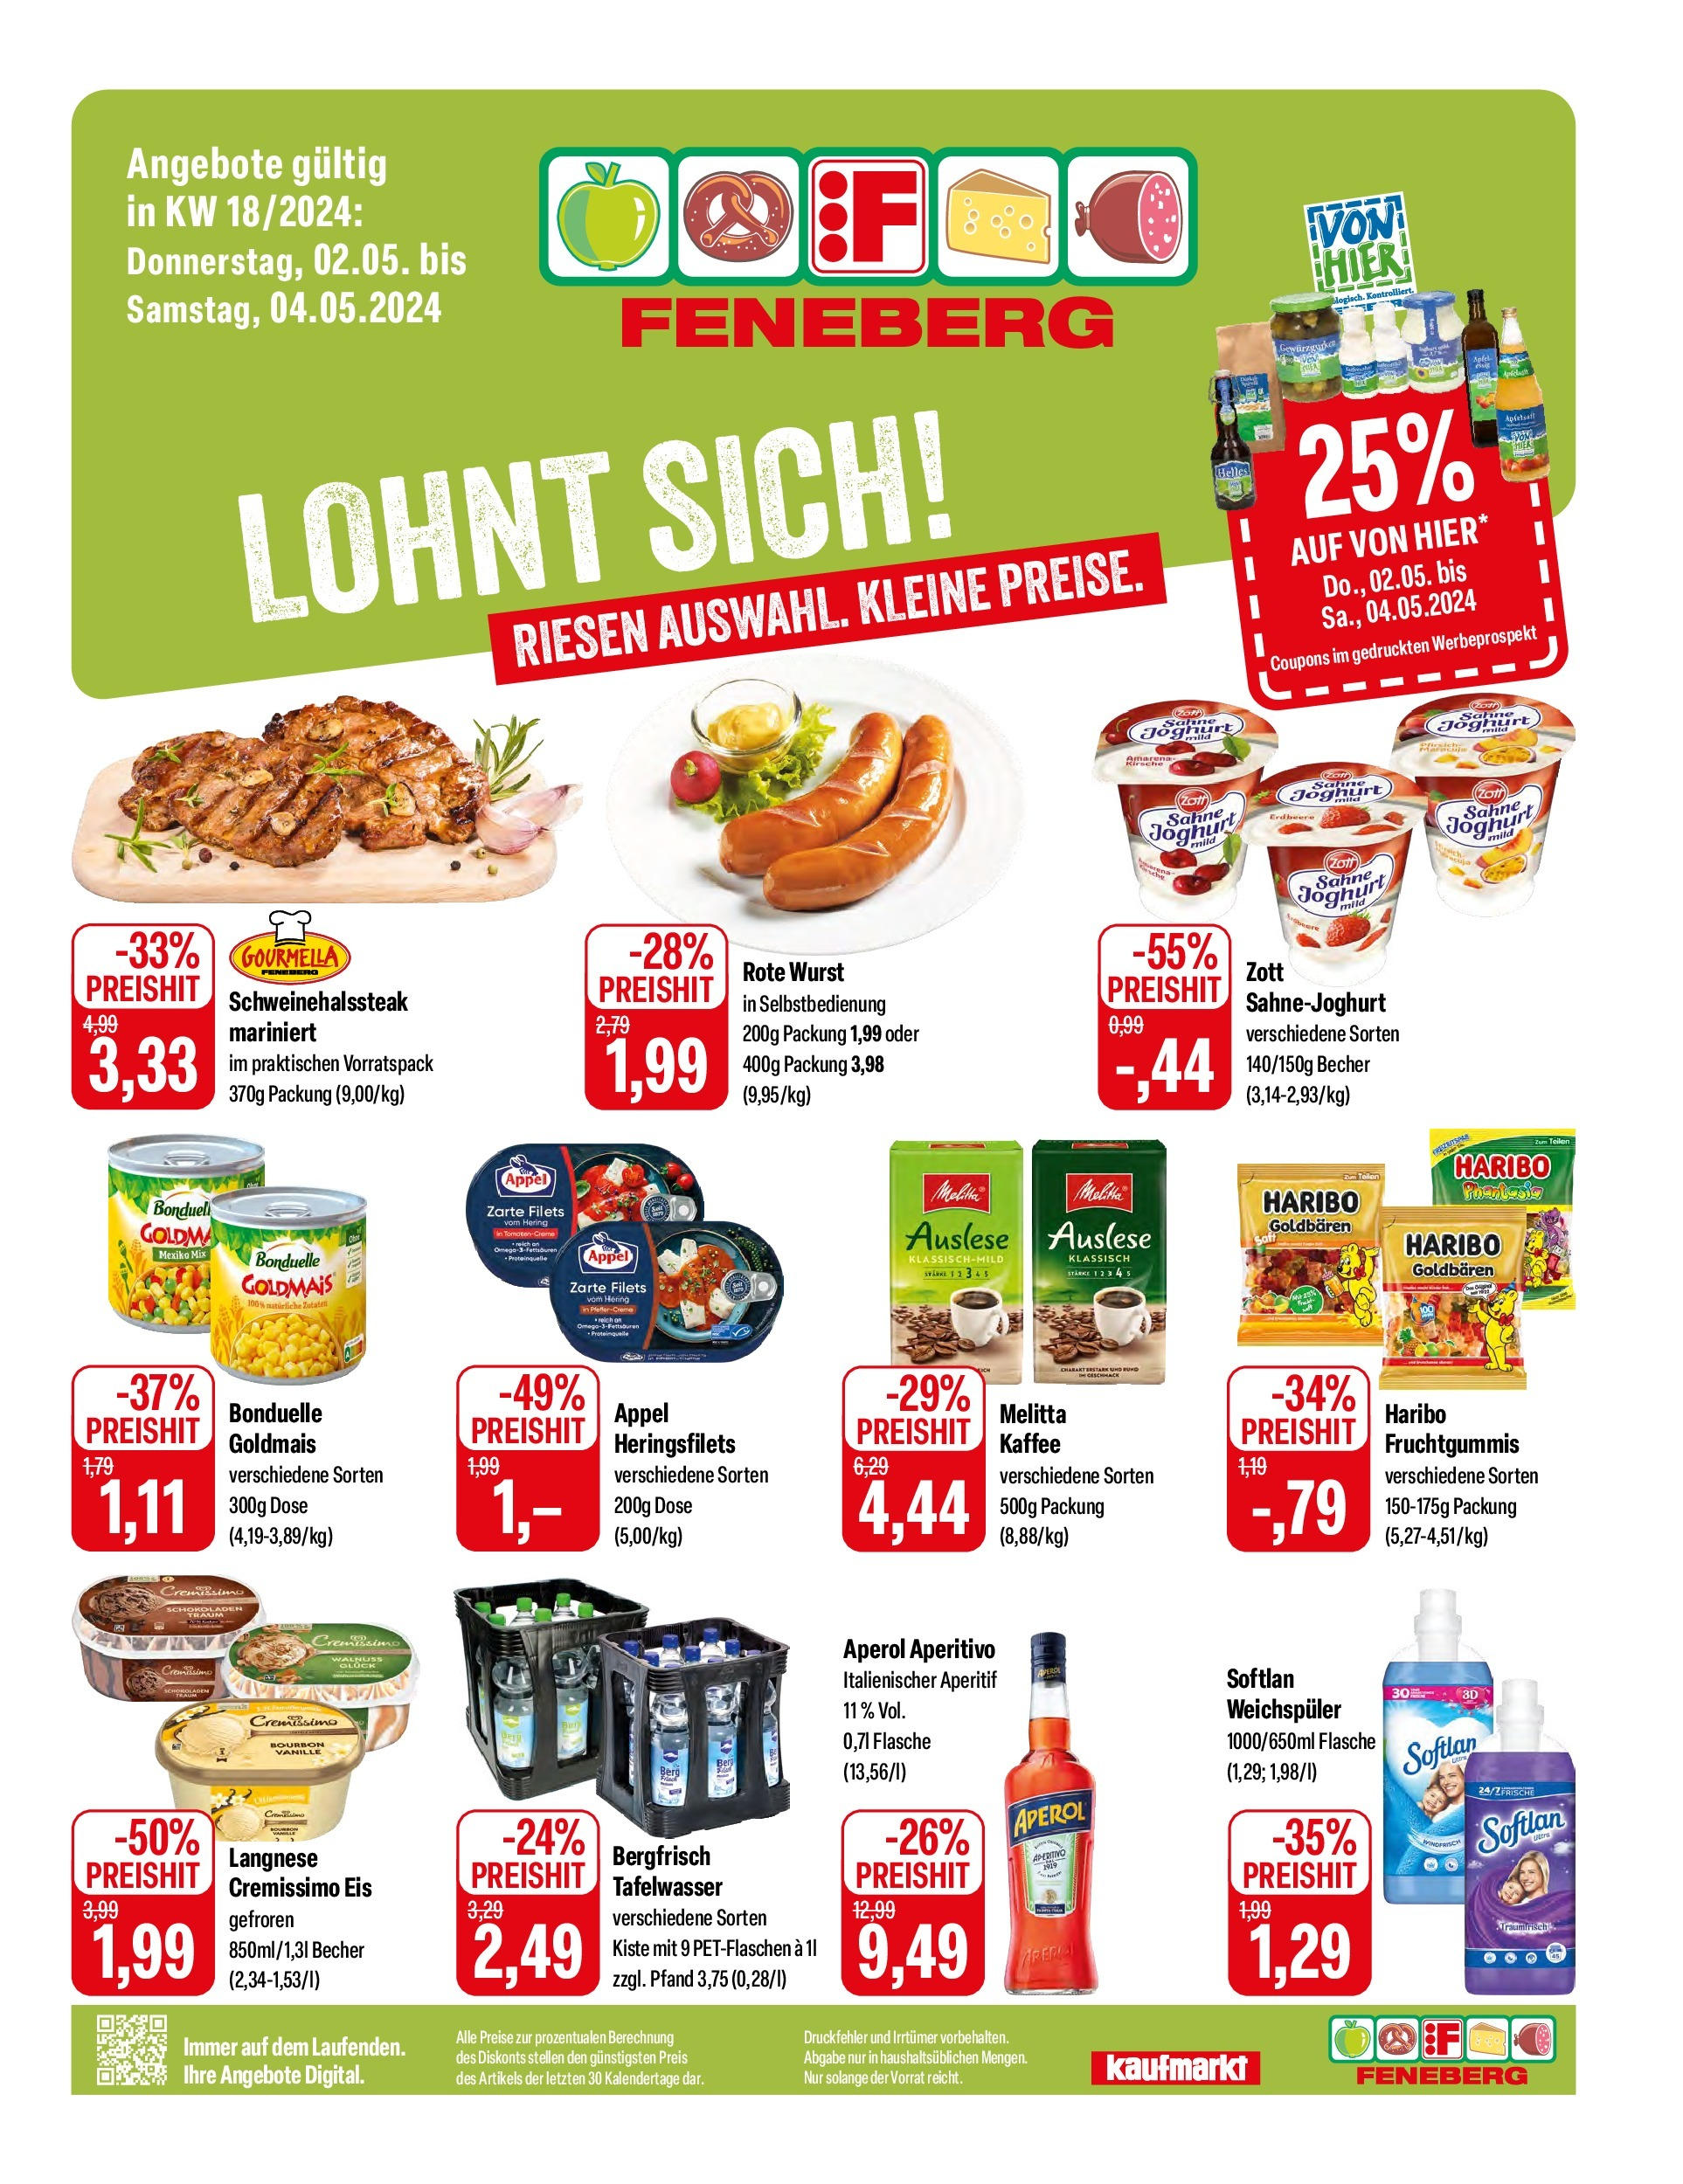 Feneberg Angebote (ab 02.05.2024) zum Blättern | Seite: 1 | Produkte: Melitta, Kaffee, Wurst, Sahne